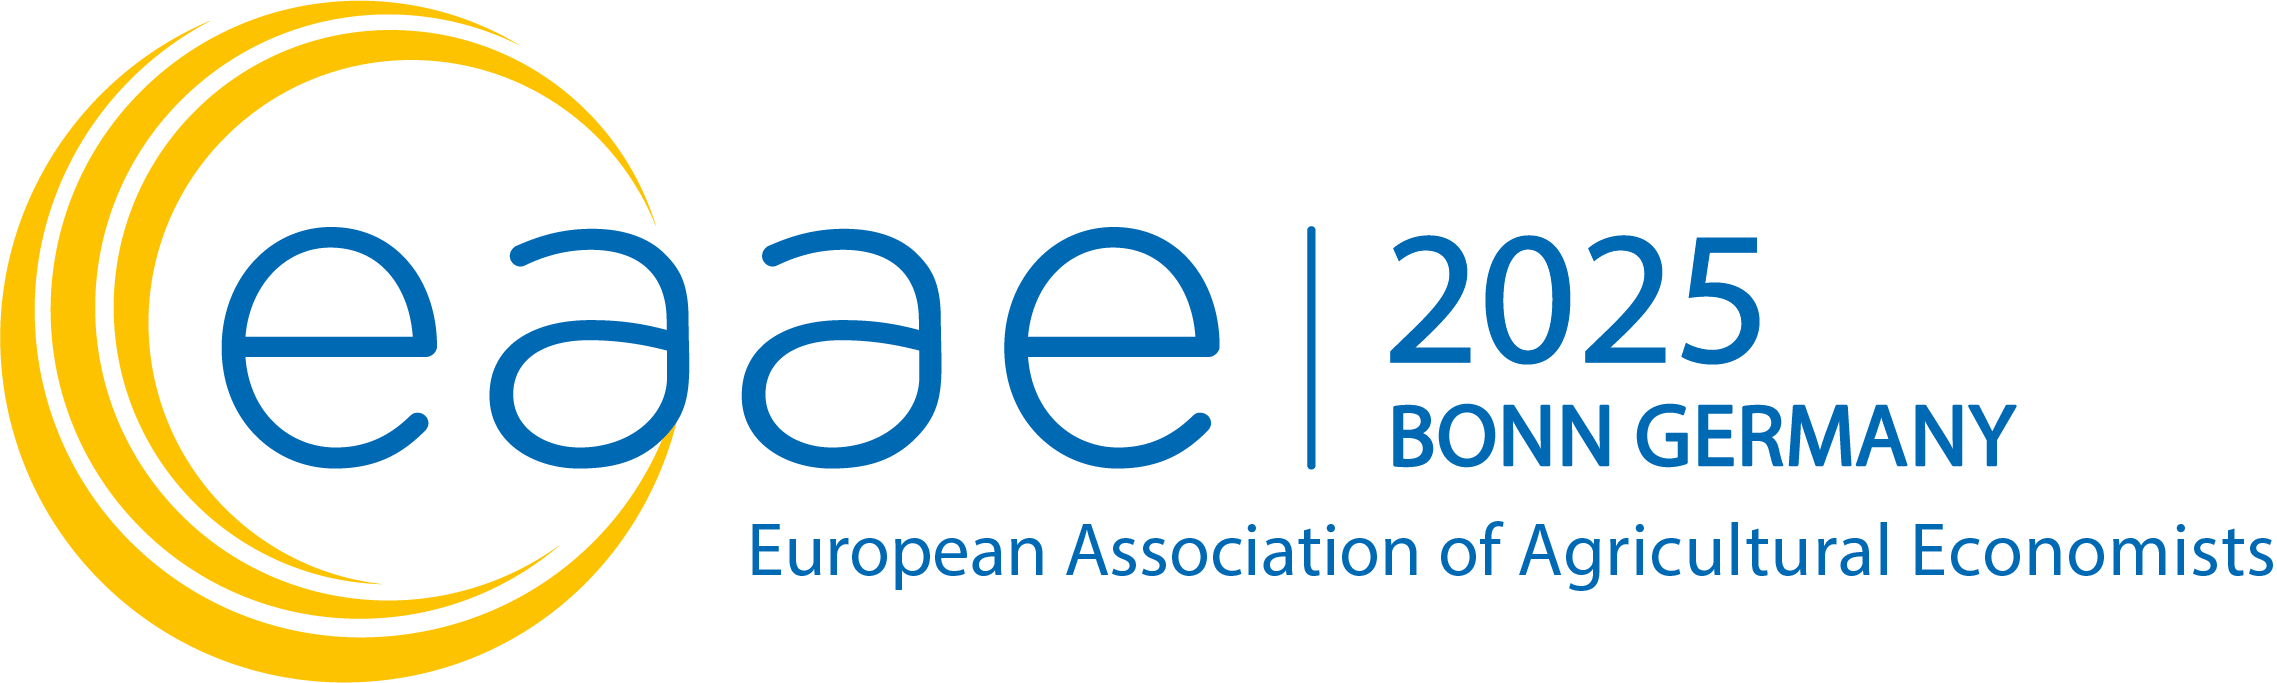 EAAE congress 2025